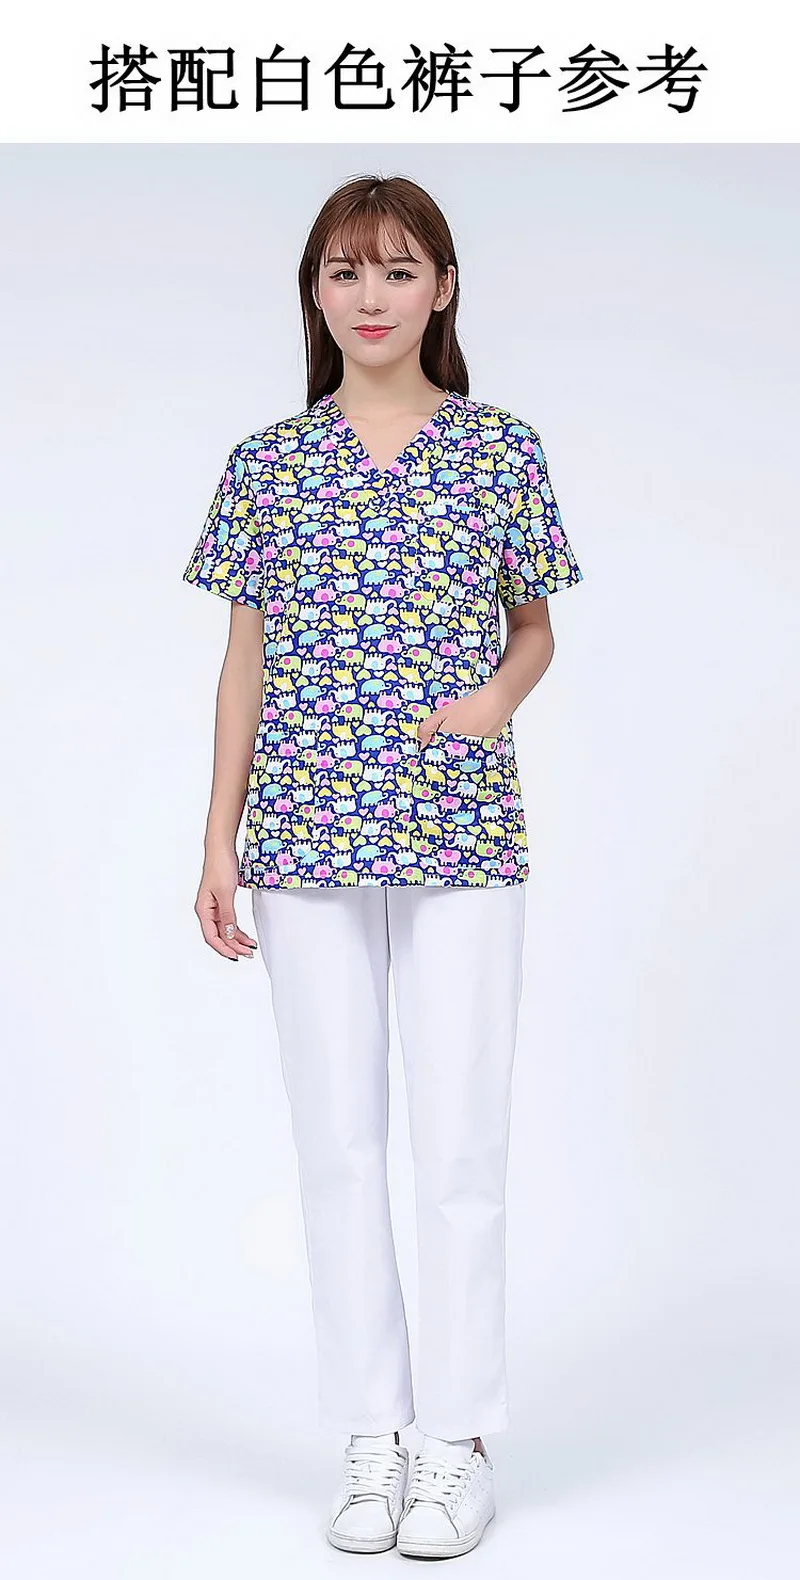 Sanxiaxin униформа для сотрудниц спа-салонов больничный медицинский скраб комплект одежды стоматологическая клиника и салон красоты для ролевых игр, медсестра, мода Slim Fit хирургические